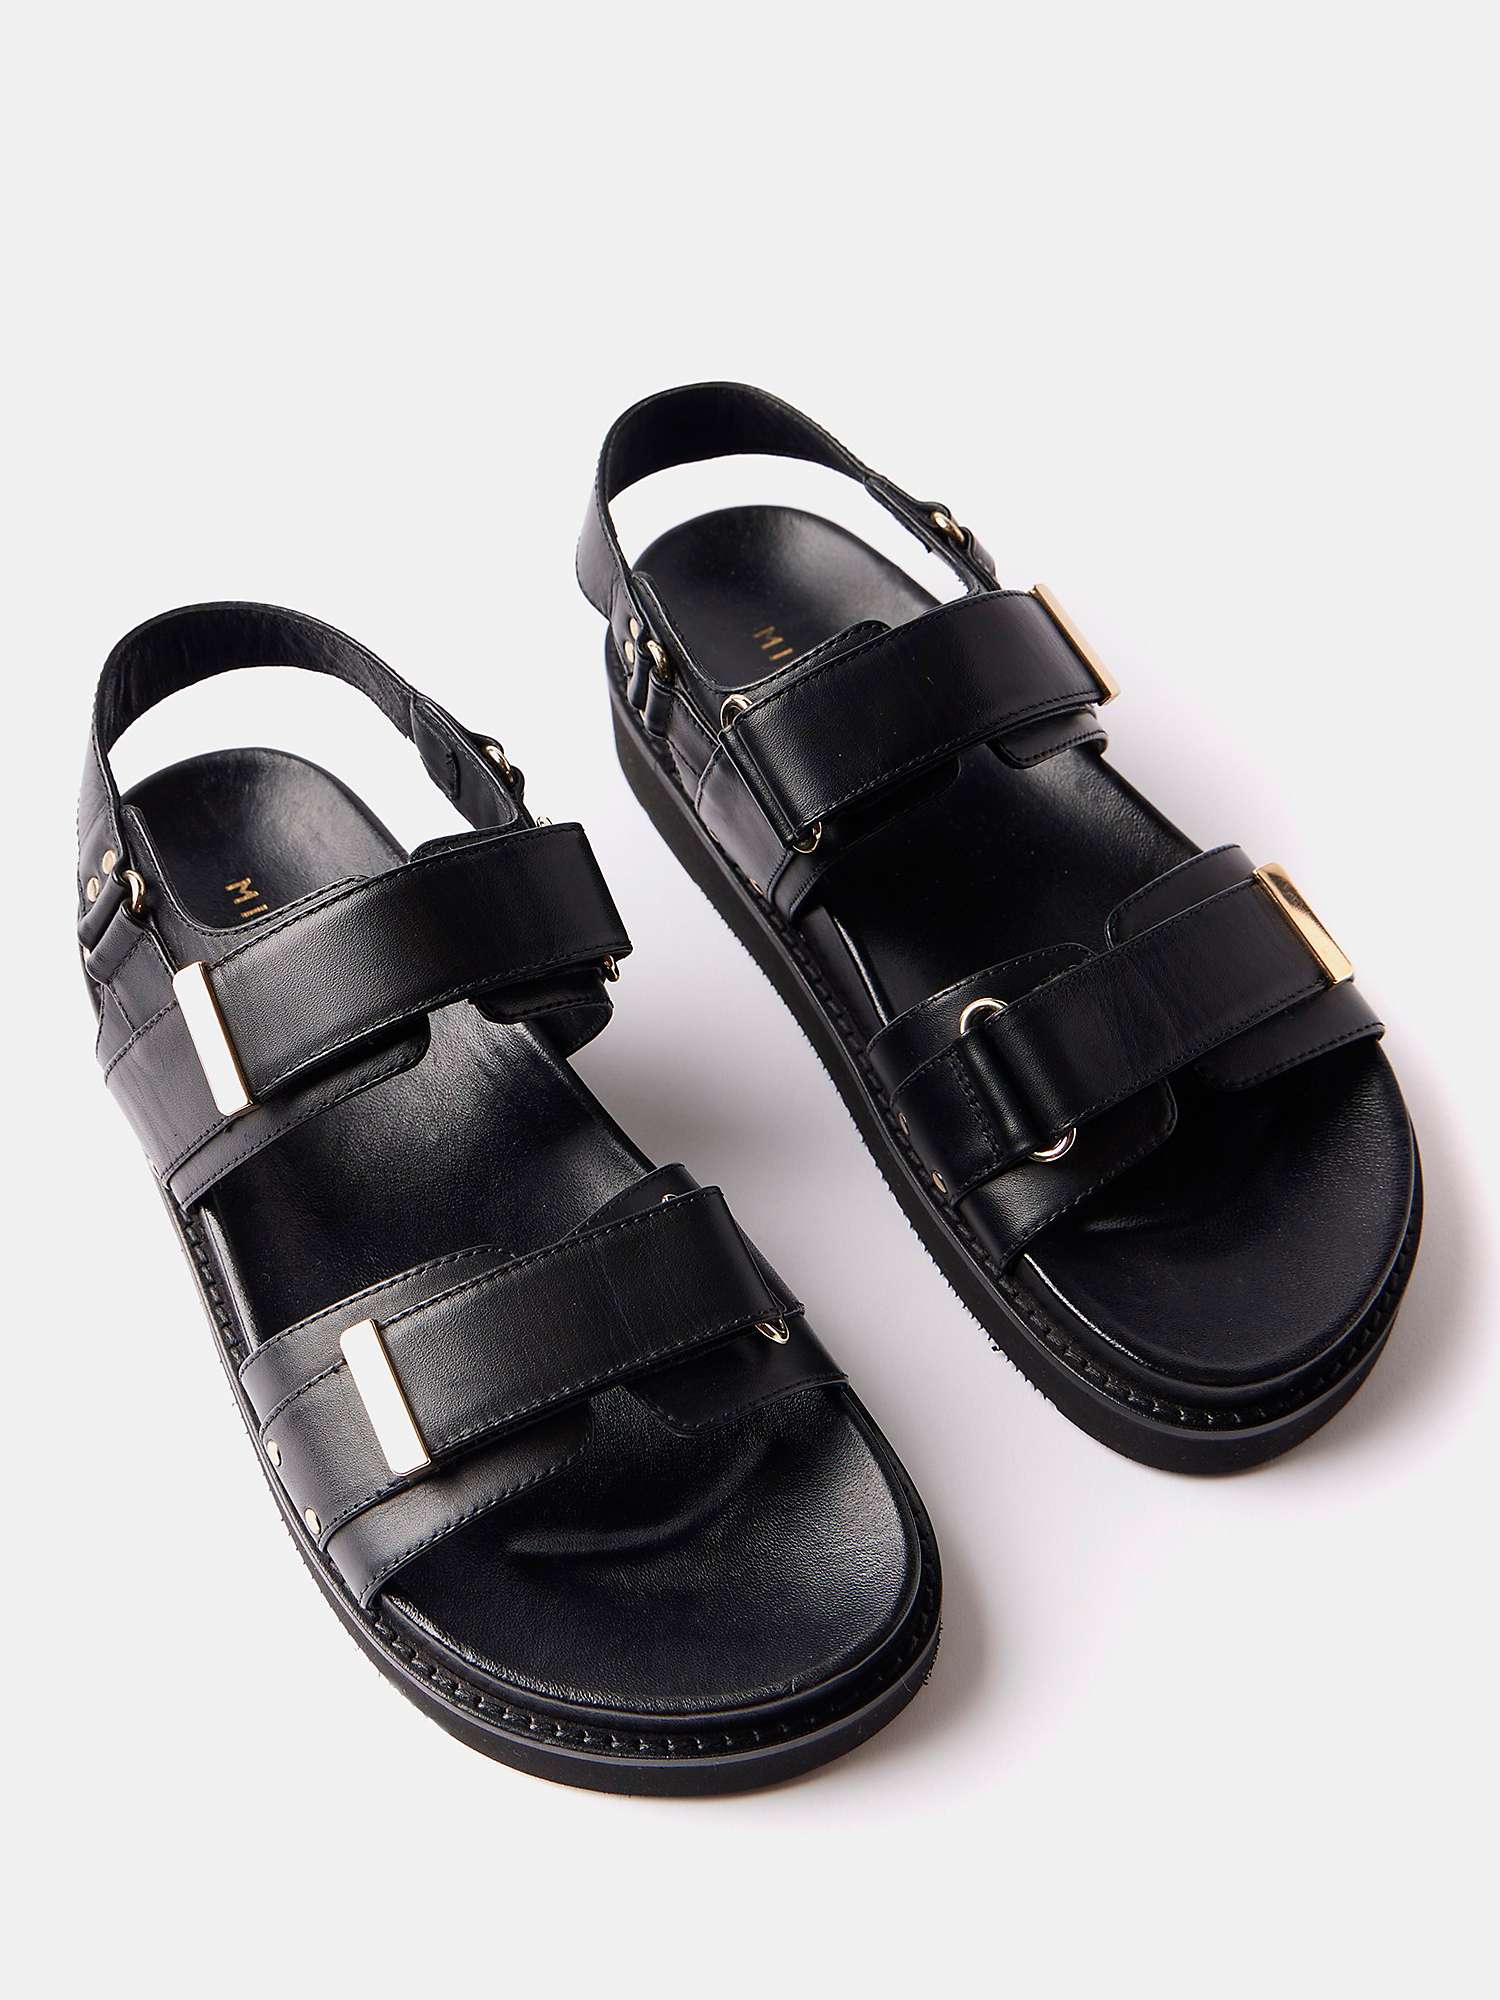 Buy Mint Velvet Leather Flatform Sandals, Black Online at johnlewis.com